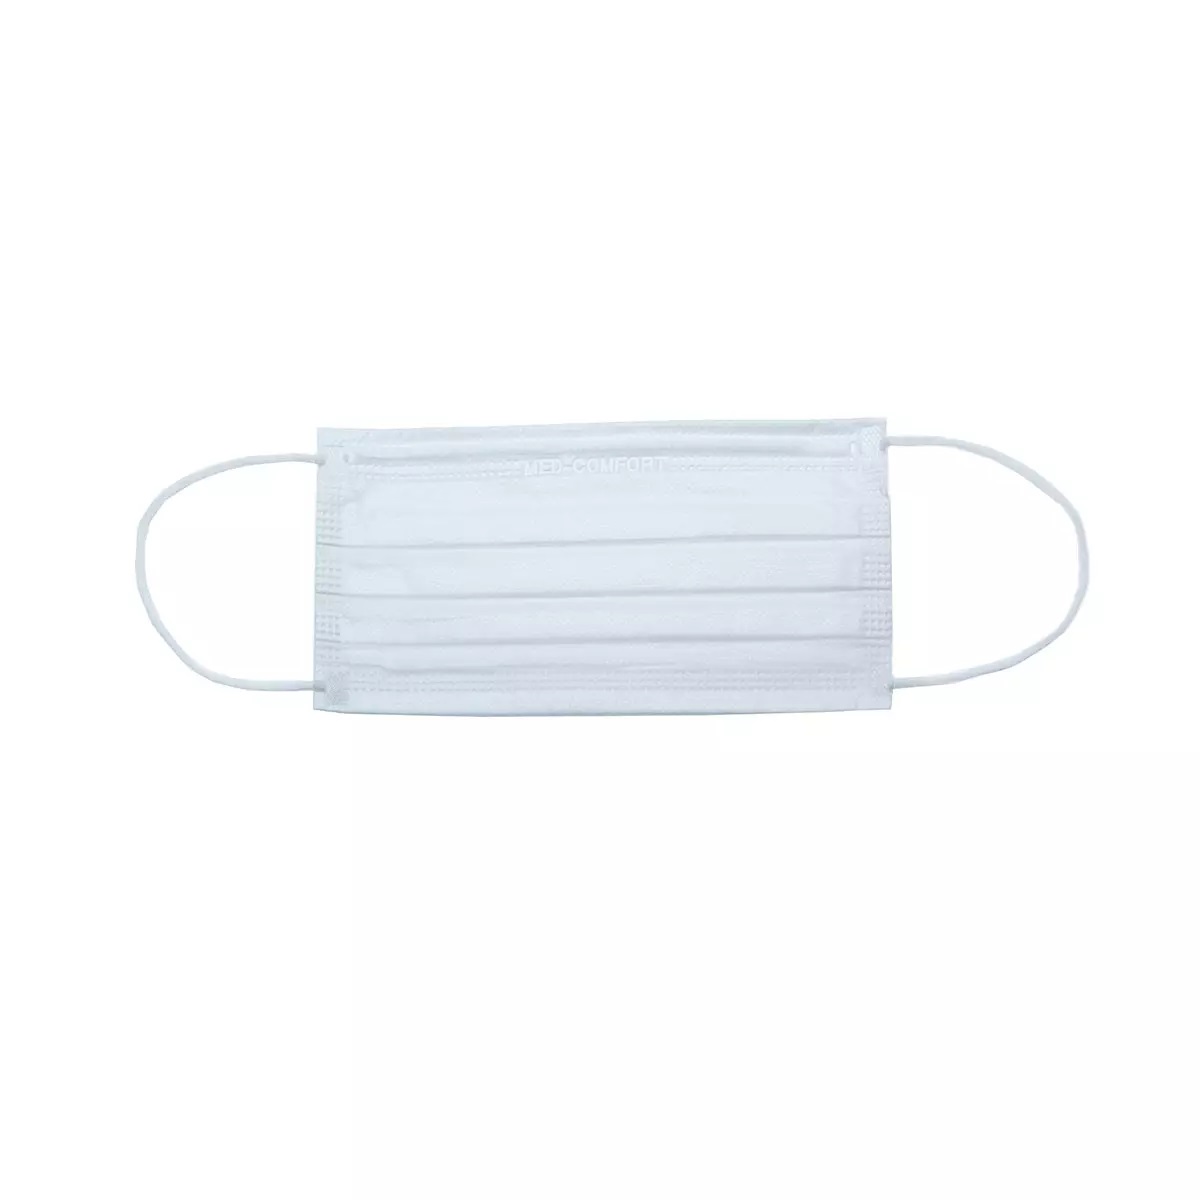 AMPRI-Einweg-Mundschutz, MED COMFORT, 3-lagig, runde Elastikbänder, VE = Pkg. á 50 Stück, weiß